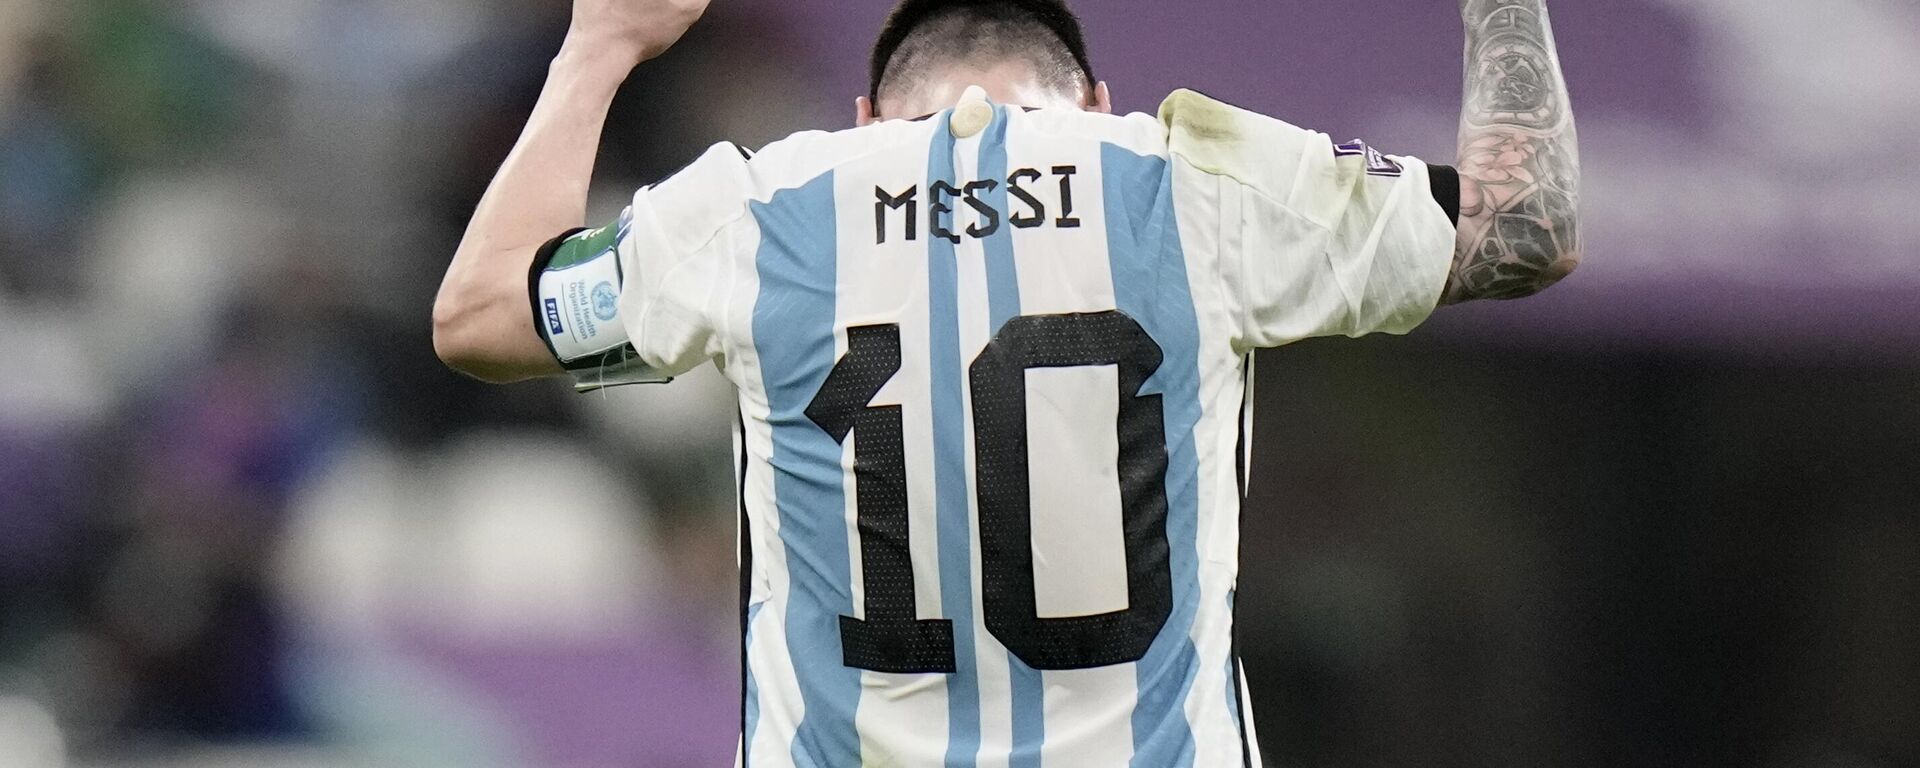 Lionel Messi reacciona al pitido final del partido de fútbol del entre Argentina y México, 26 de noviembre de 2022 - Sputnik Mundo, 1920, 06.12.2022